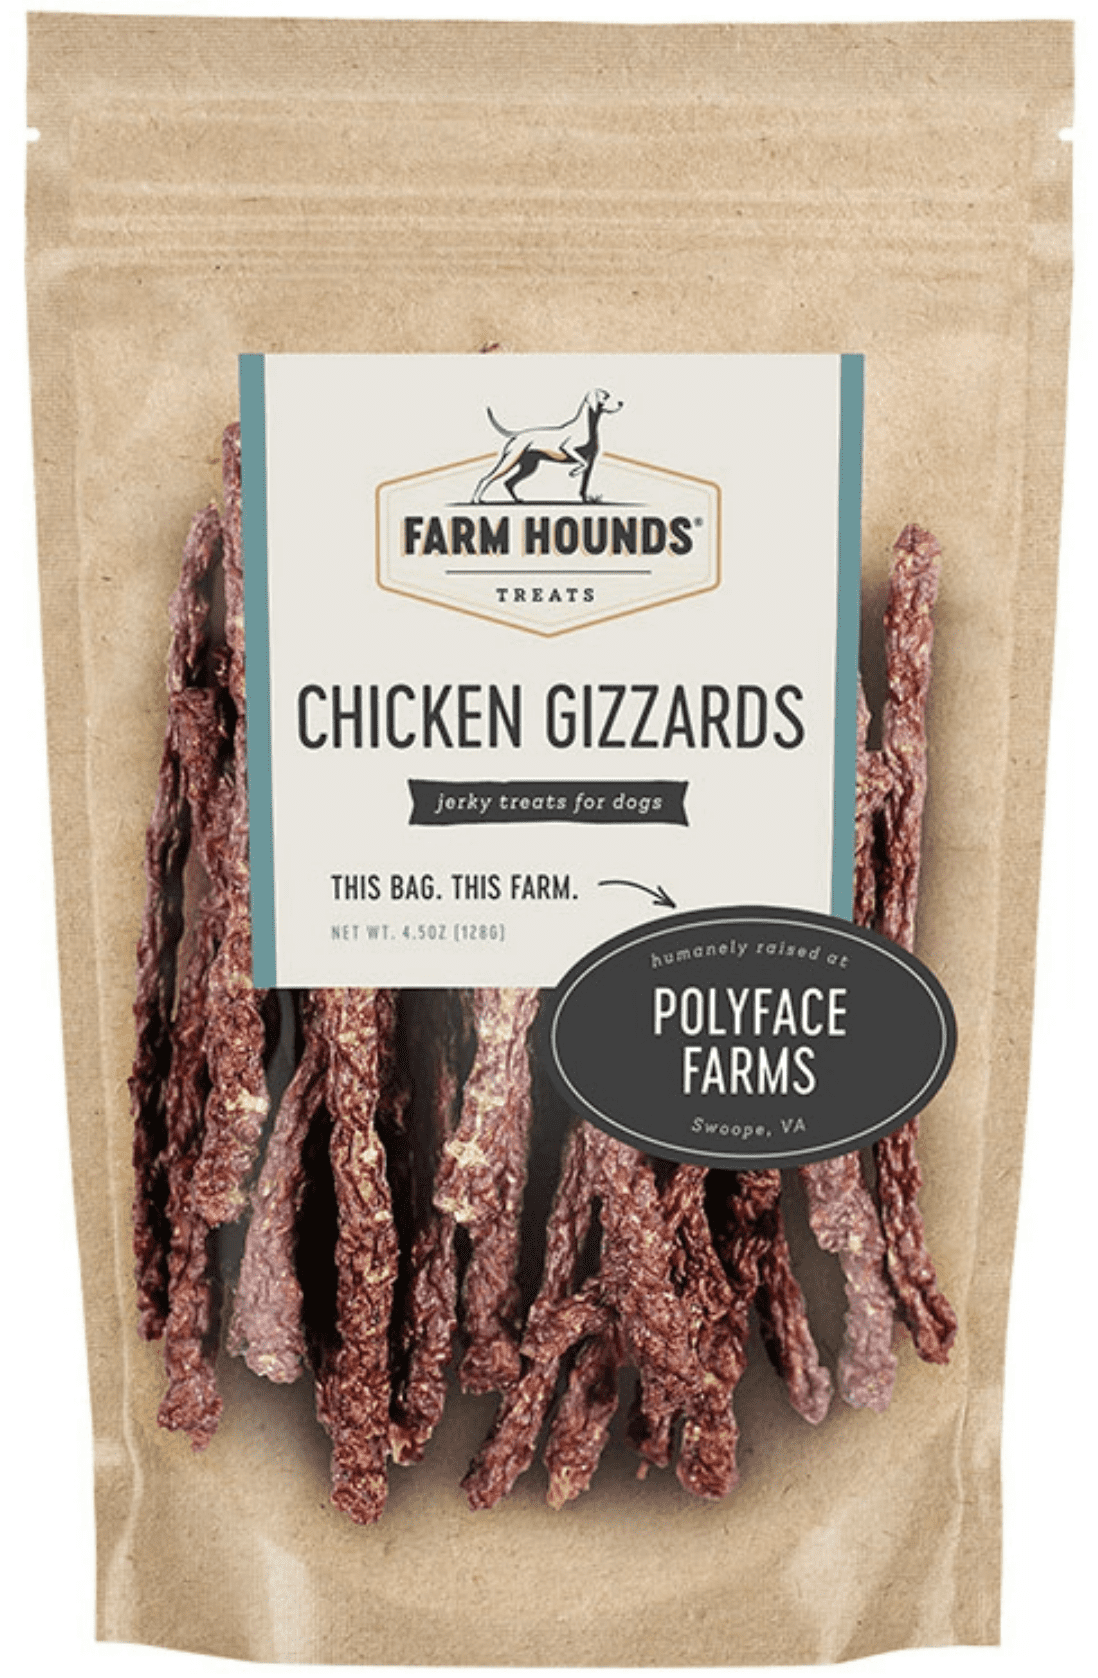 Farm Hounds Chicken Gizzards